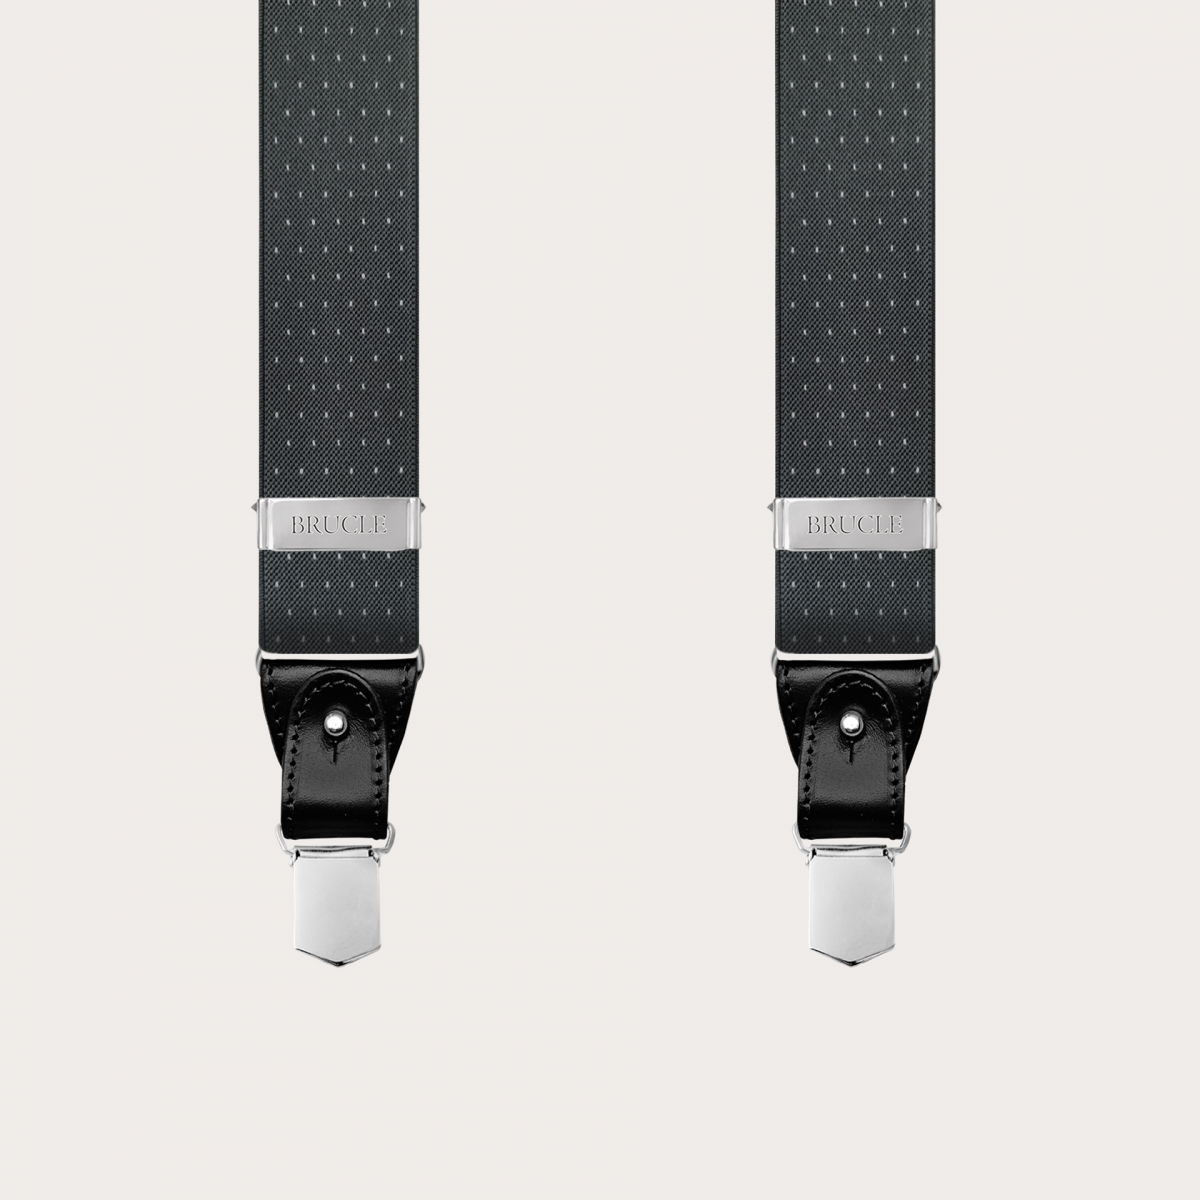 BRUCLE Graue, elastische Hosenträger in Y-Form mit gepunktetem Muster